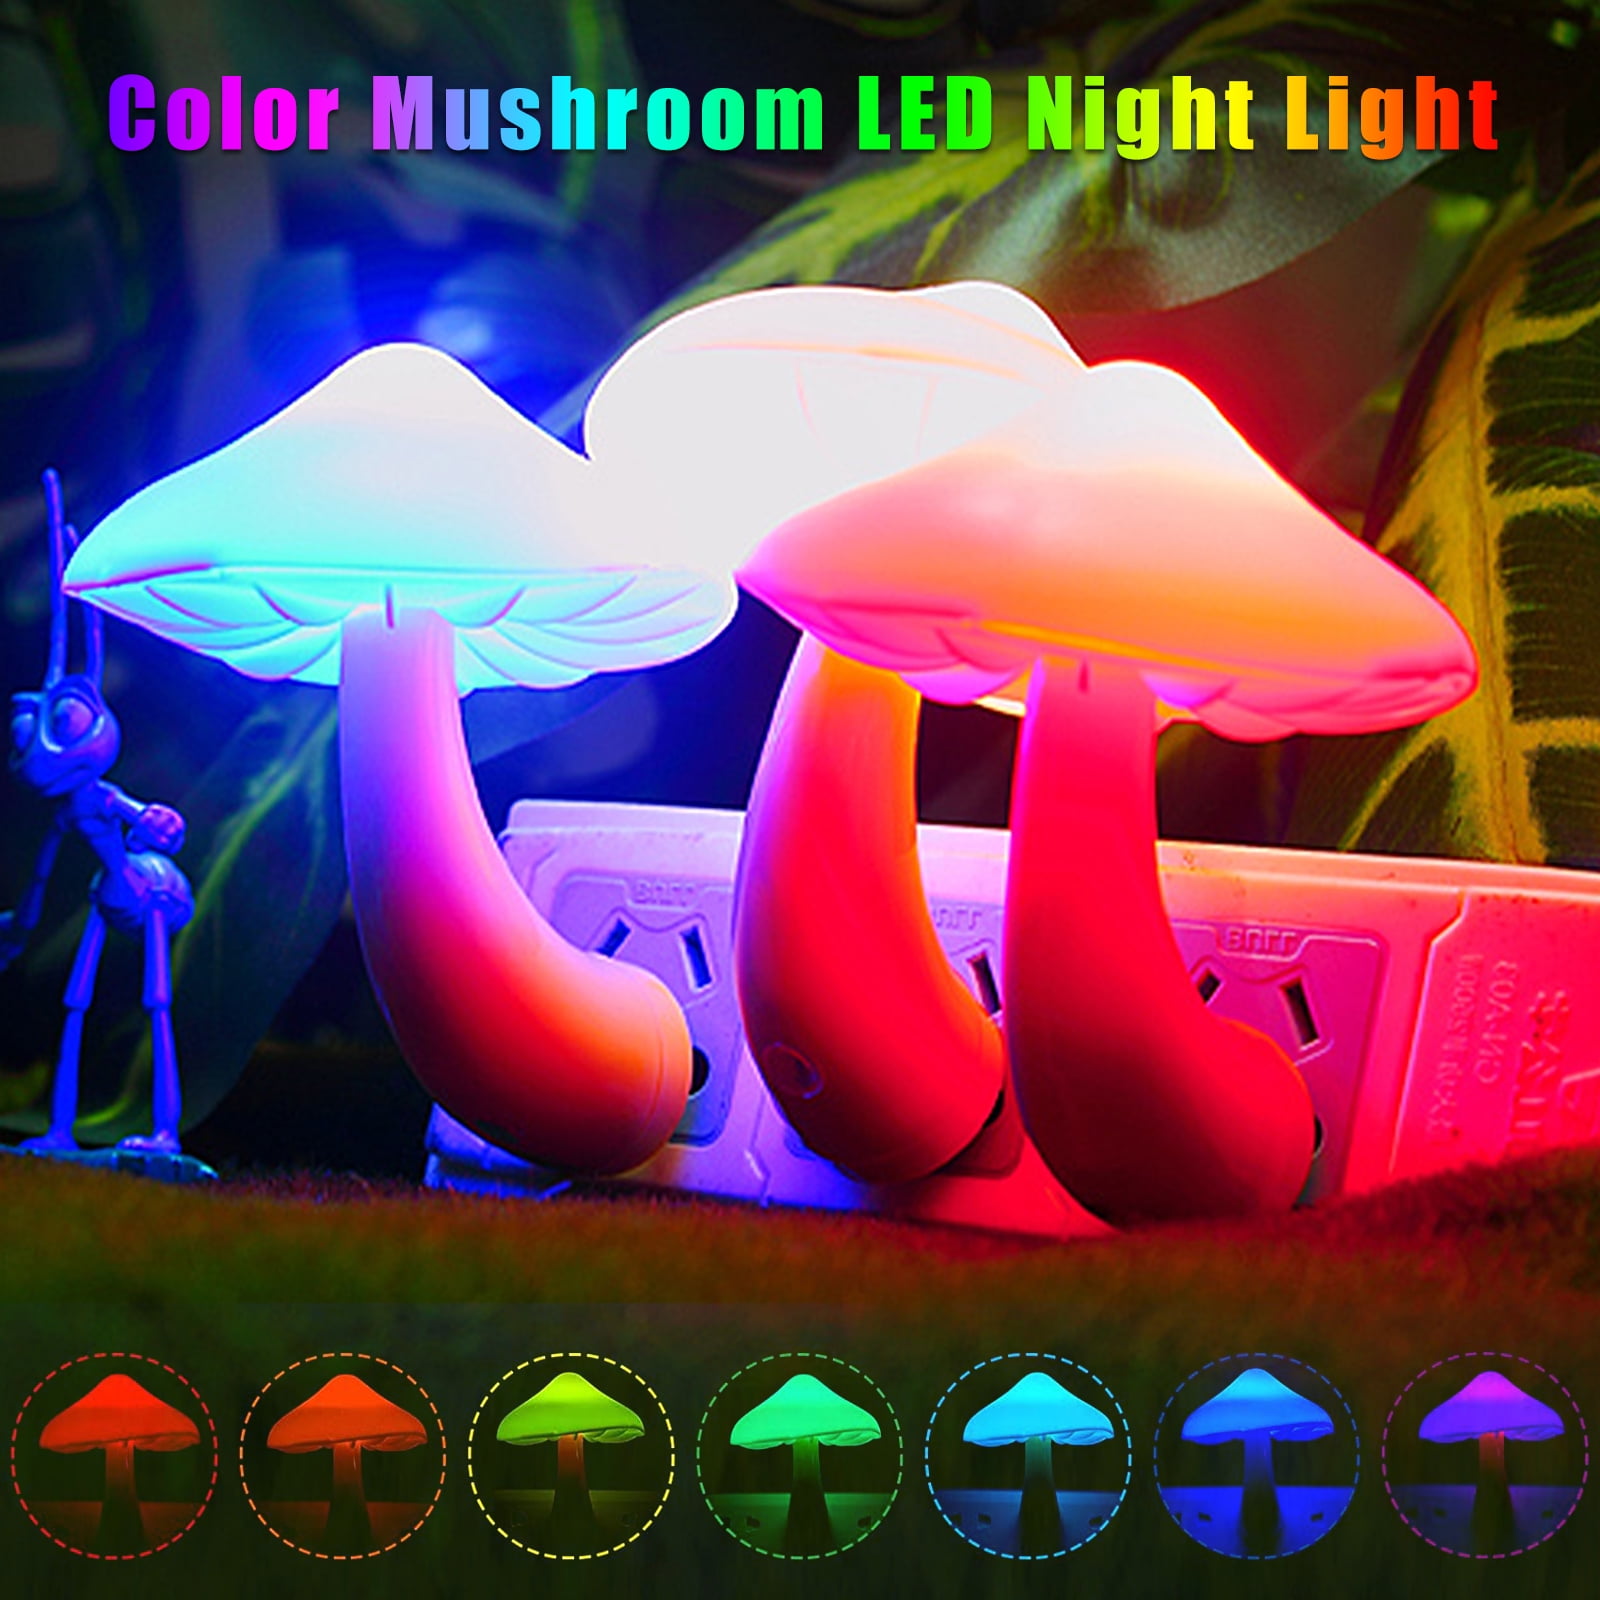 Cute Colorful Rainbow Color Mushroom LED Nightlight Energy Saving Sensor Lamp 